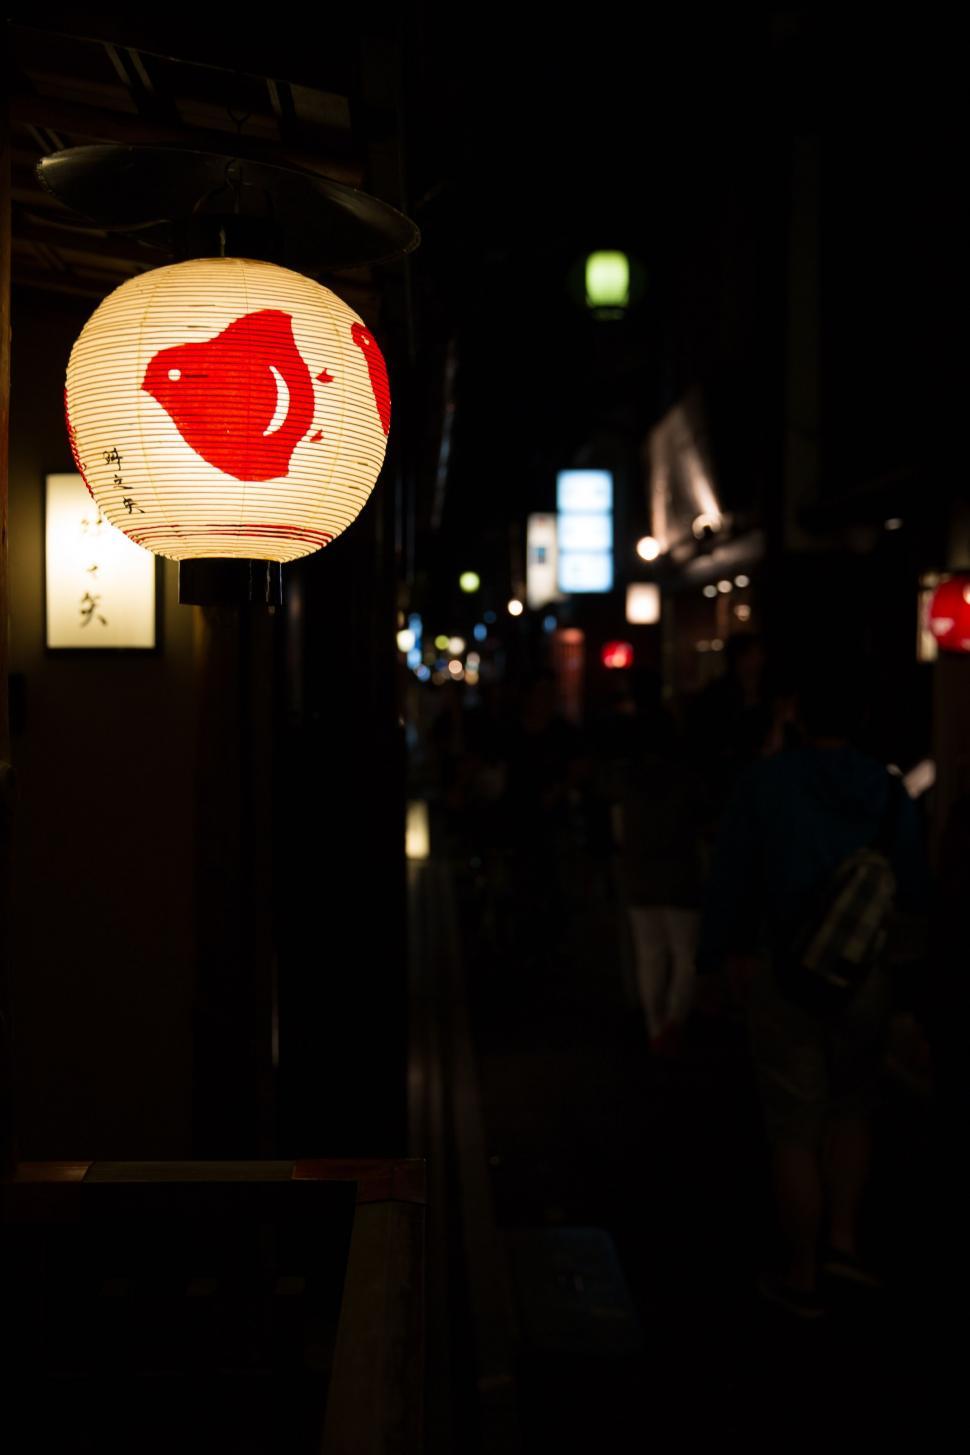 Free Image of Japanese lantern 